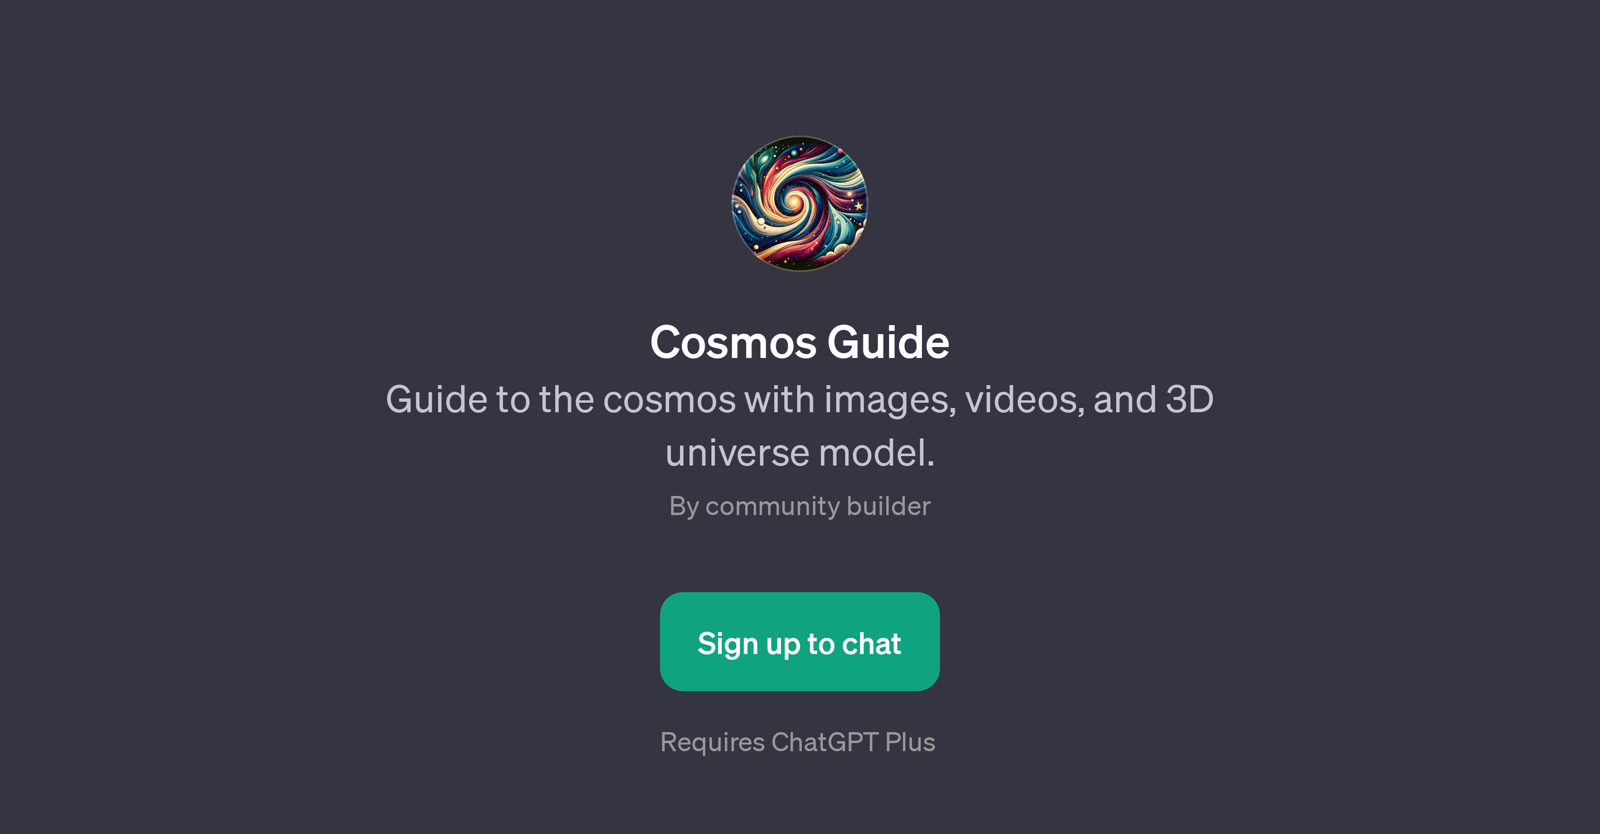 Cosmos Guide website